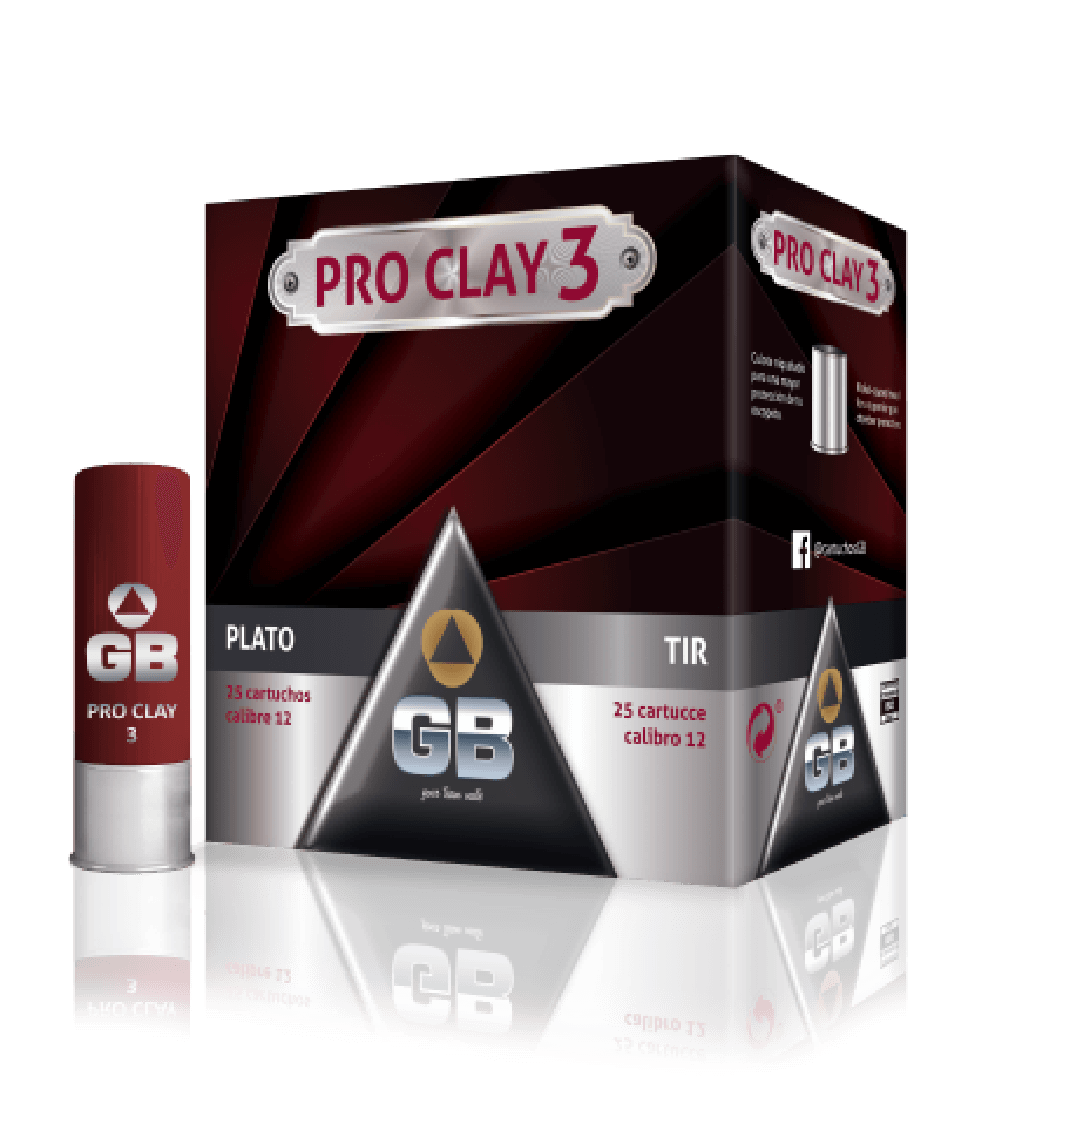 Pro Clay 3